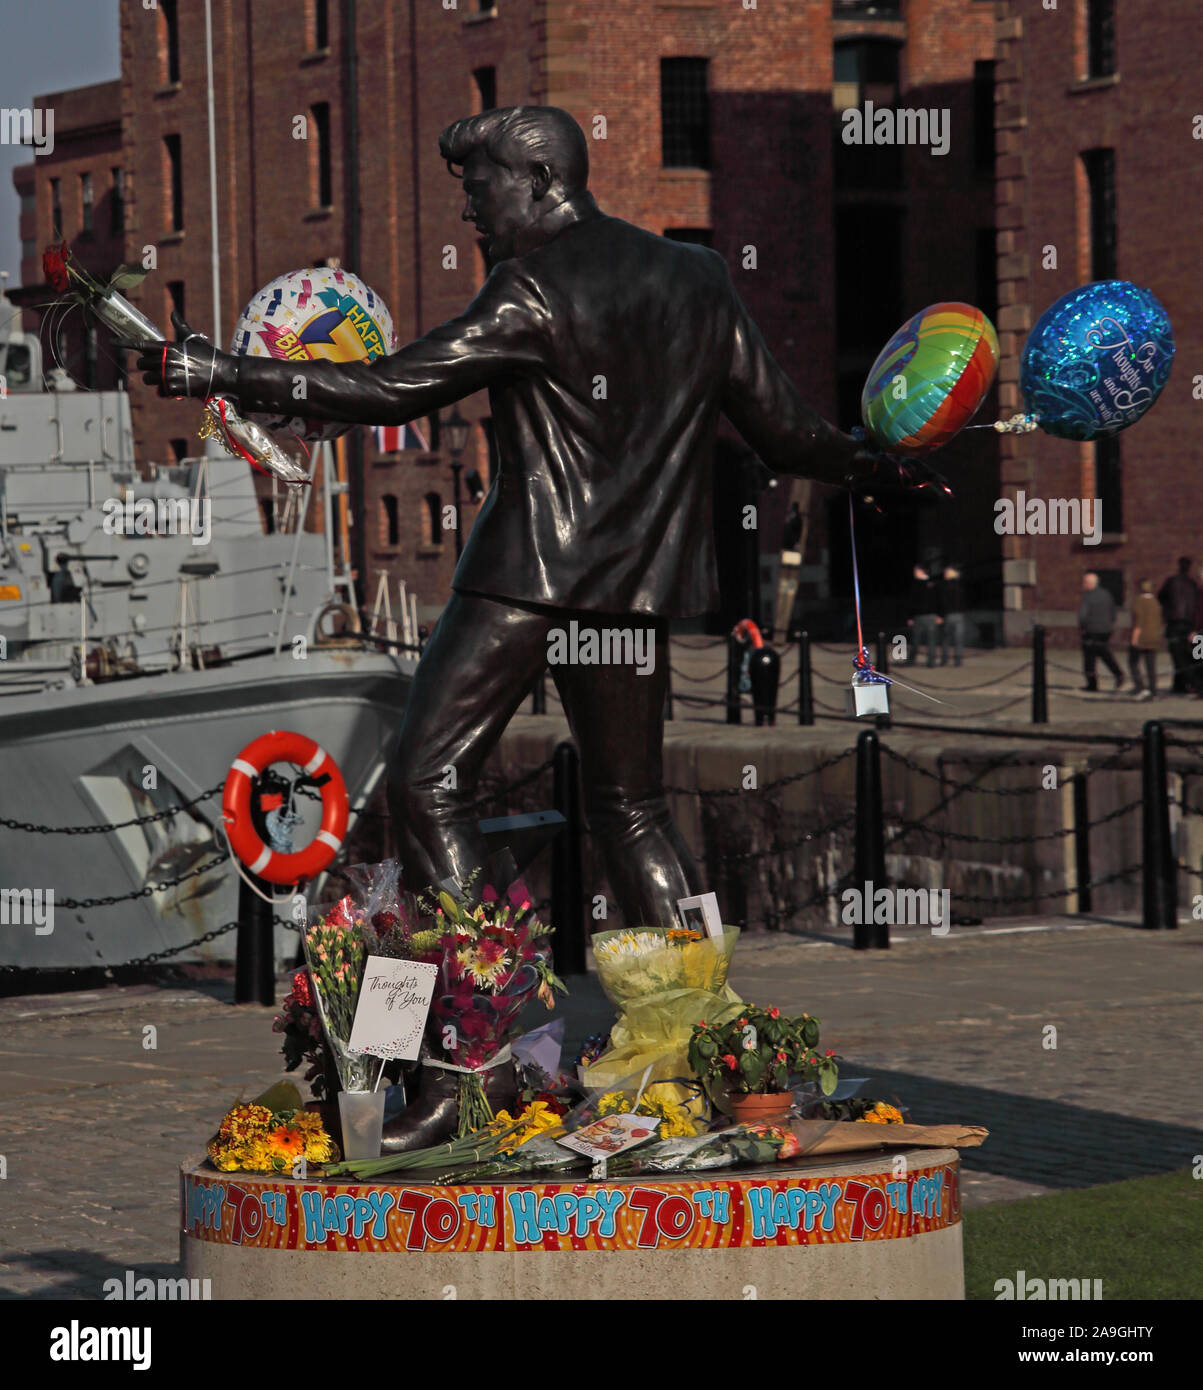 Statue de Billy Fury par Tom Murphy, anniversaire de 70 ans, musicien, Albert Dock, Liverpool, Angleterre, Royaume-Uni, L3 4BB Banque D'Images